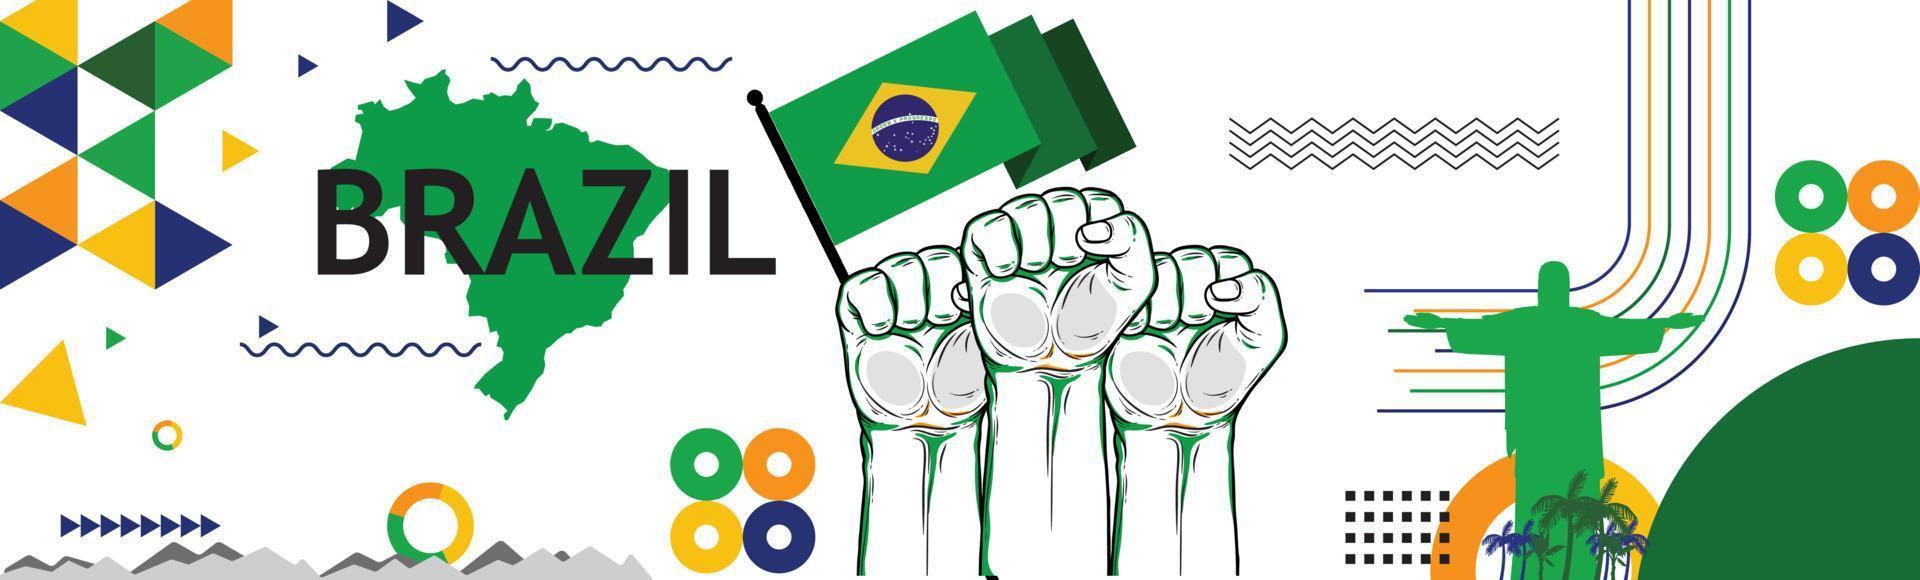 modern retro design med rio landmärken abstrakt icons.brazil med flagga och Karta av Uppfostrad nävar. nationell dag eller oberoende dag design för brasiliansk firande. vektor illustration